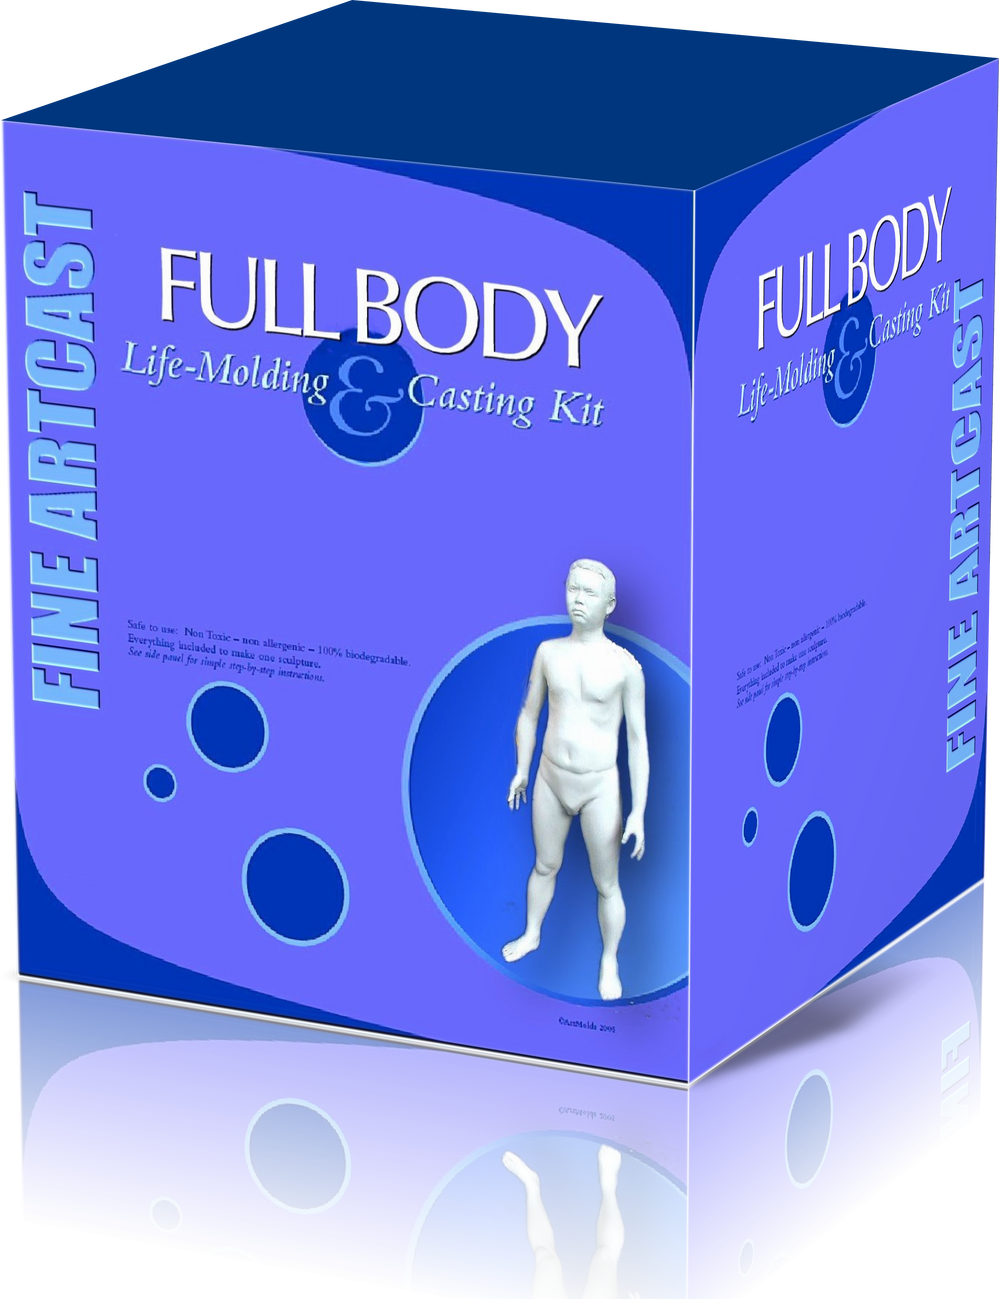  Full Body Casting Kit